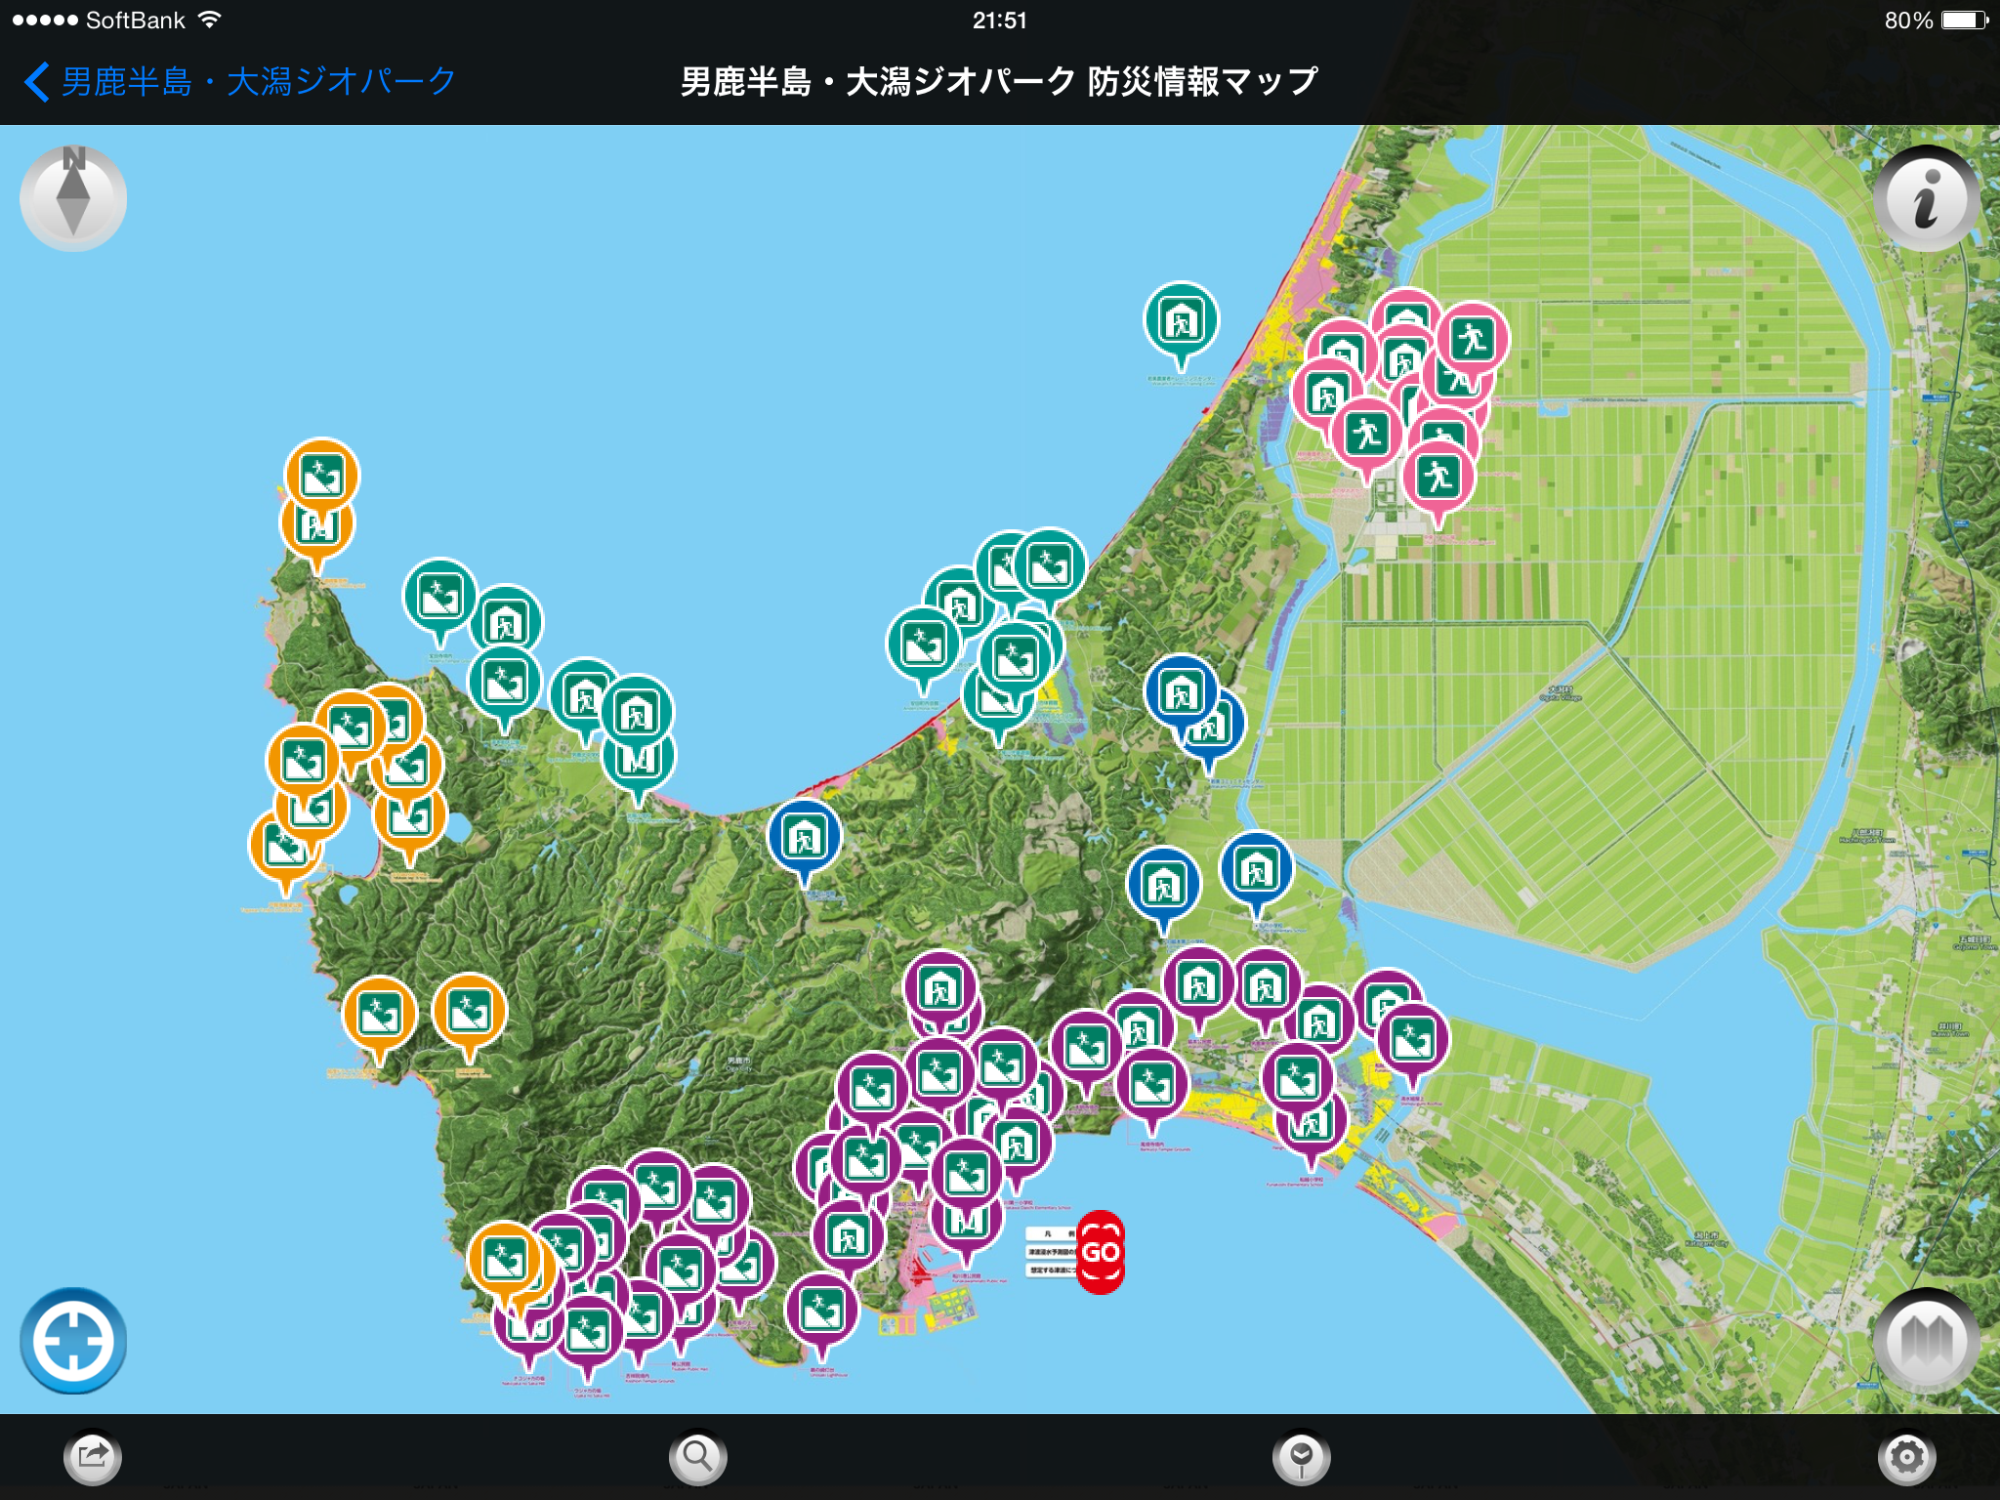 男鹿半島の地図に避難所・避難場所が表示されたアプリ画面